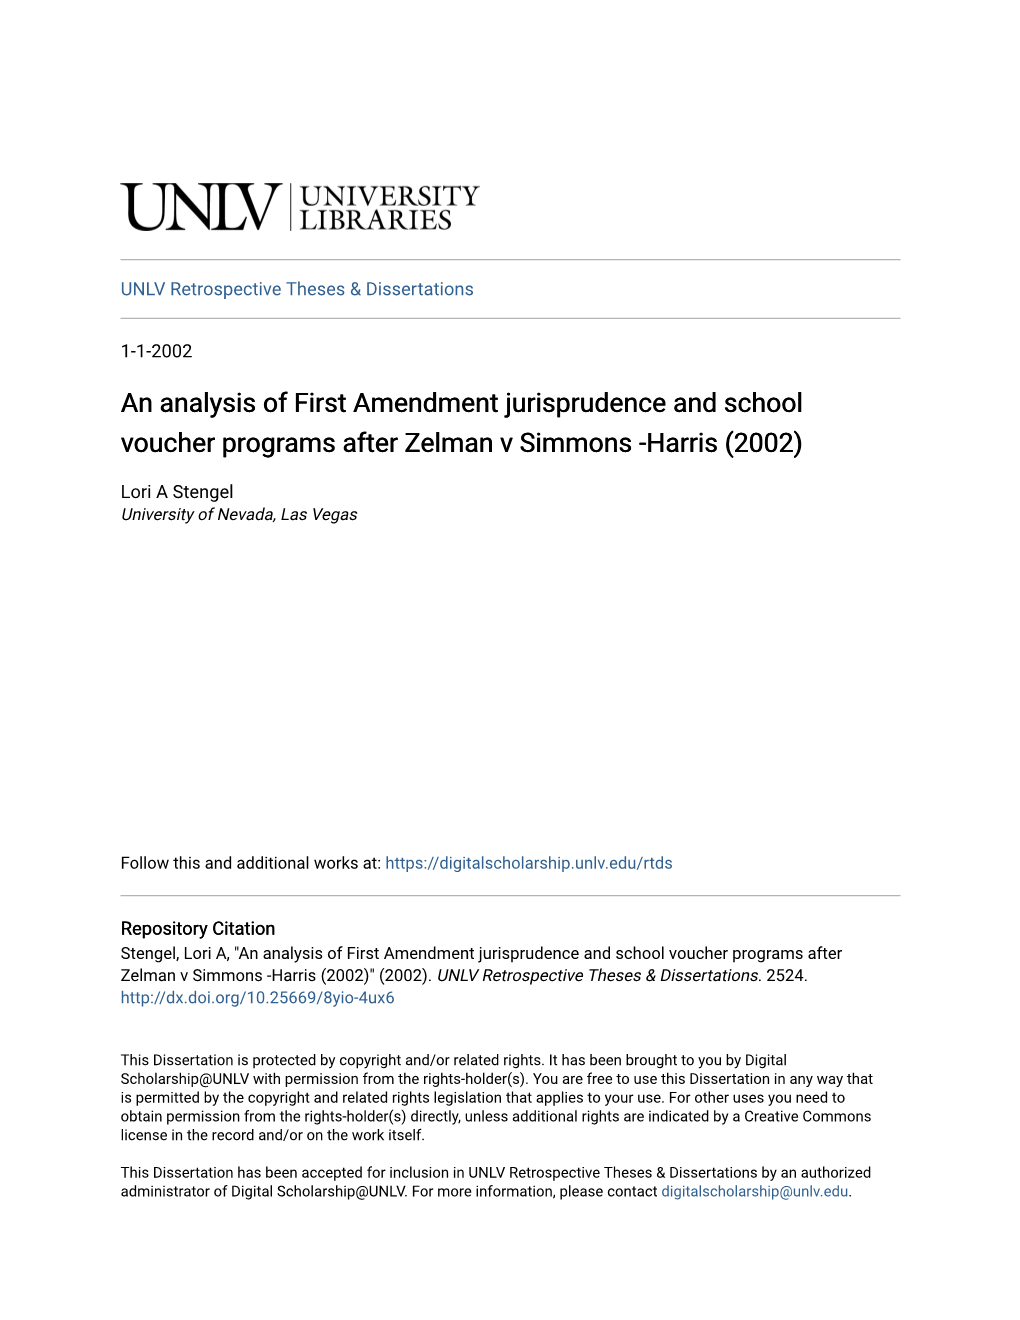 An Analysis of First Amendment Jurisprudence and School Voucher Programs After Zelman V Simmons -Harris (2002)